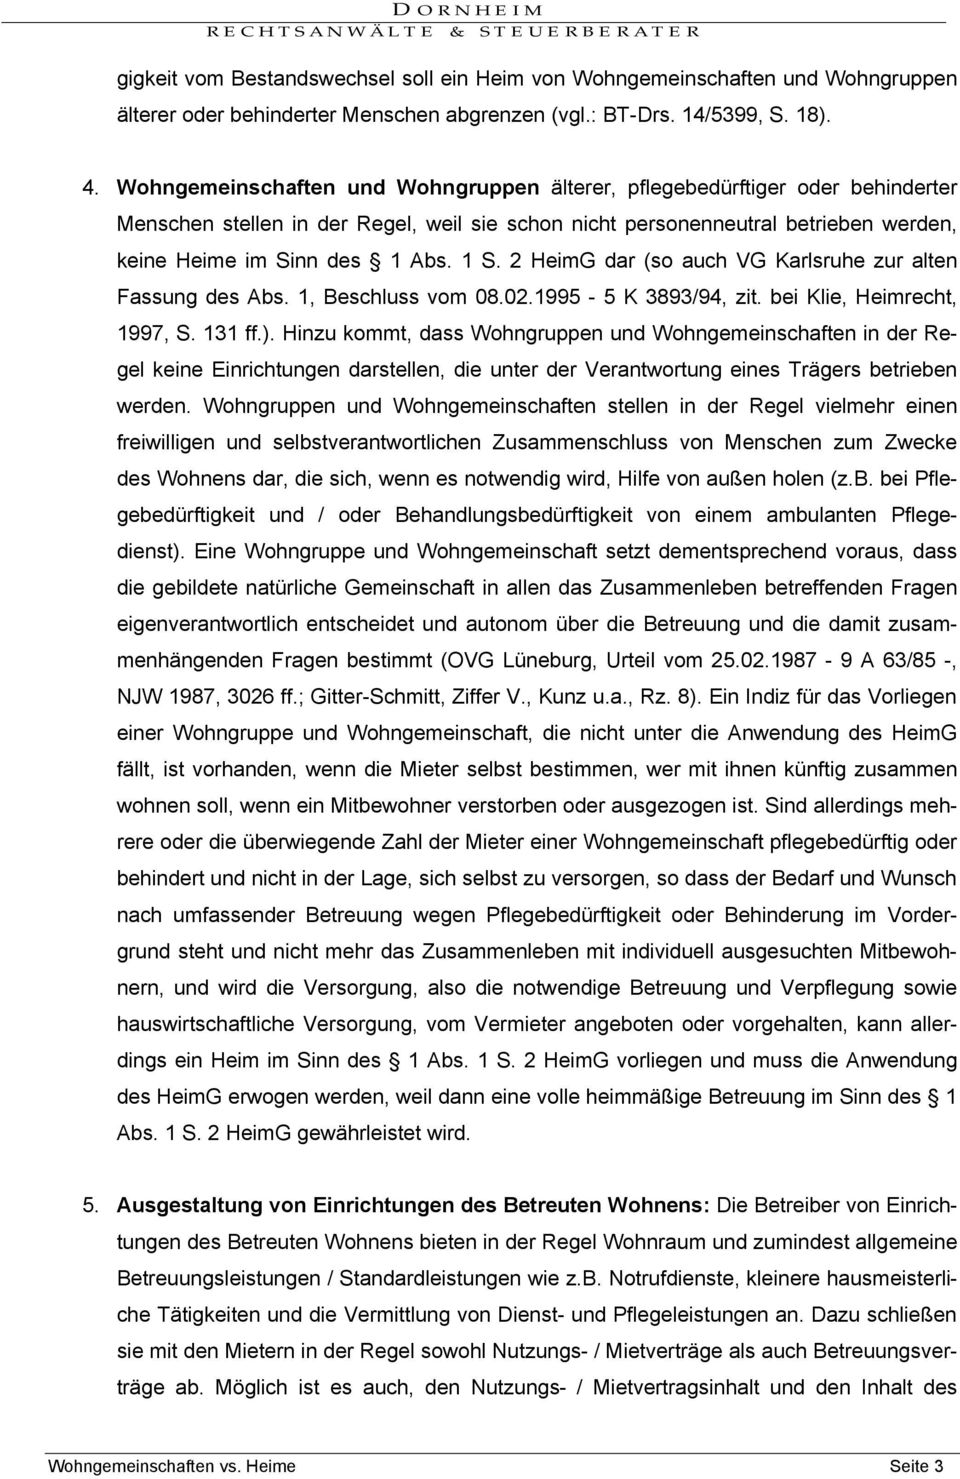 2 HeimG dar (so auch VG Karlsruhe zur alten Fassung des Abs. 1, Beschluss vom 08.02.1995-5 K 3893/94, zit. bei Klie, Heimrecht, 1997, S. 131 ff.).